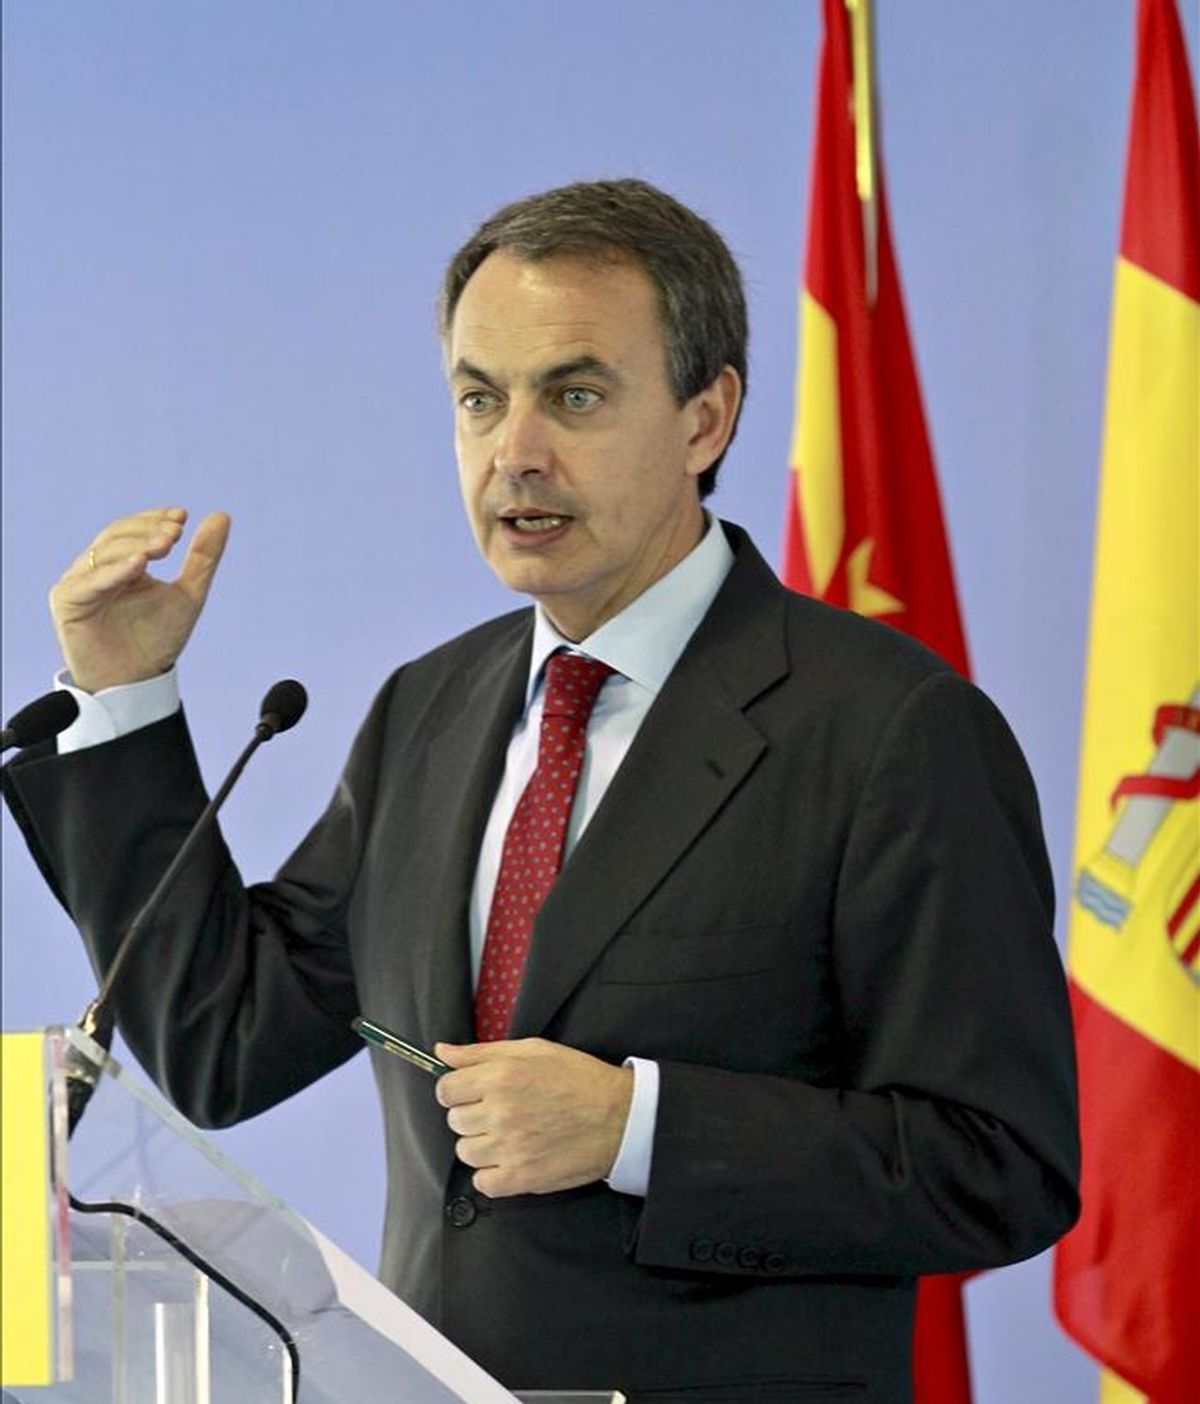 En China no ha habido compromisos concretos, pero Zapatero sí ha escuchado el interés del gigante asiático de invertir en España. Vídeo: Informativos Telecinco.